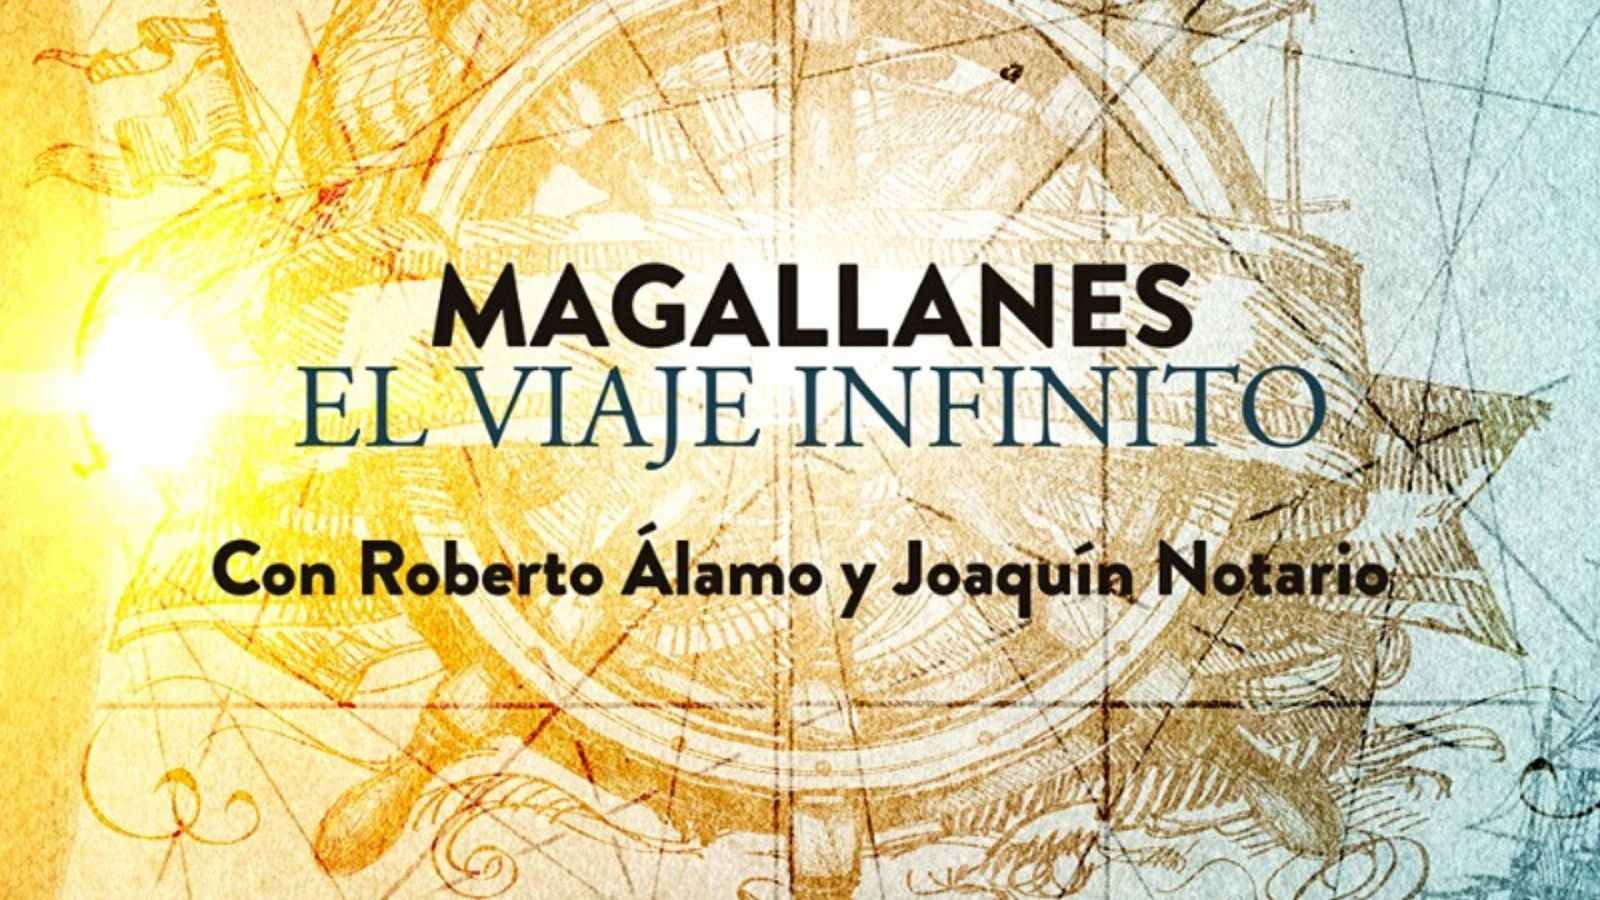 Ficción sonora de RNE ha estrenado en la 43ª edición del Festival Internacional de Teatro Clásico de Almagro «Magallanes, el viaje infinito»